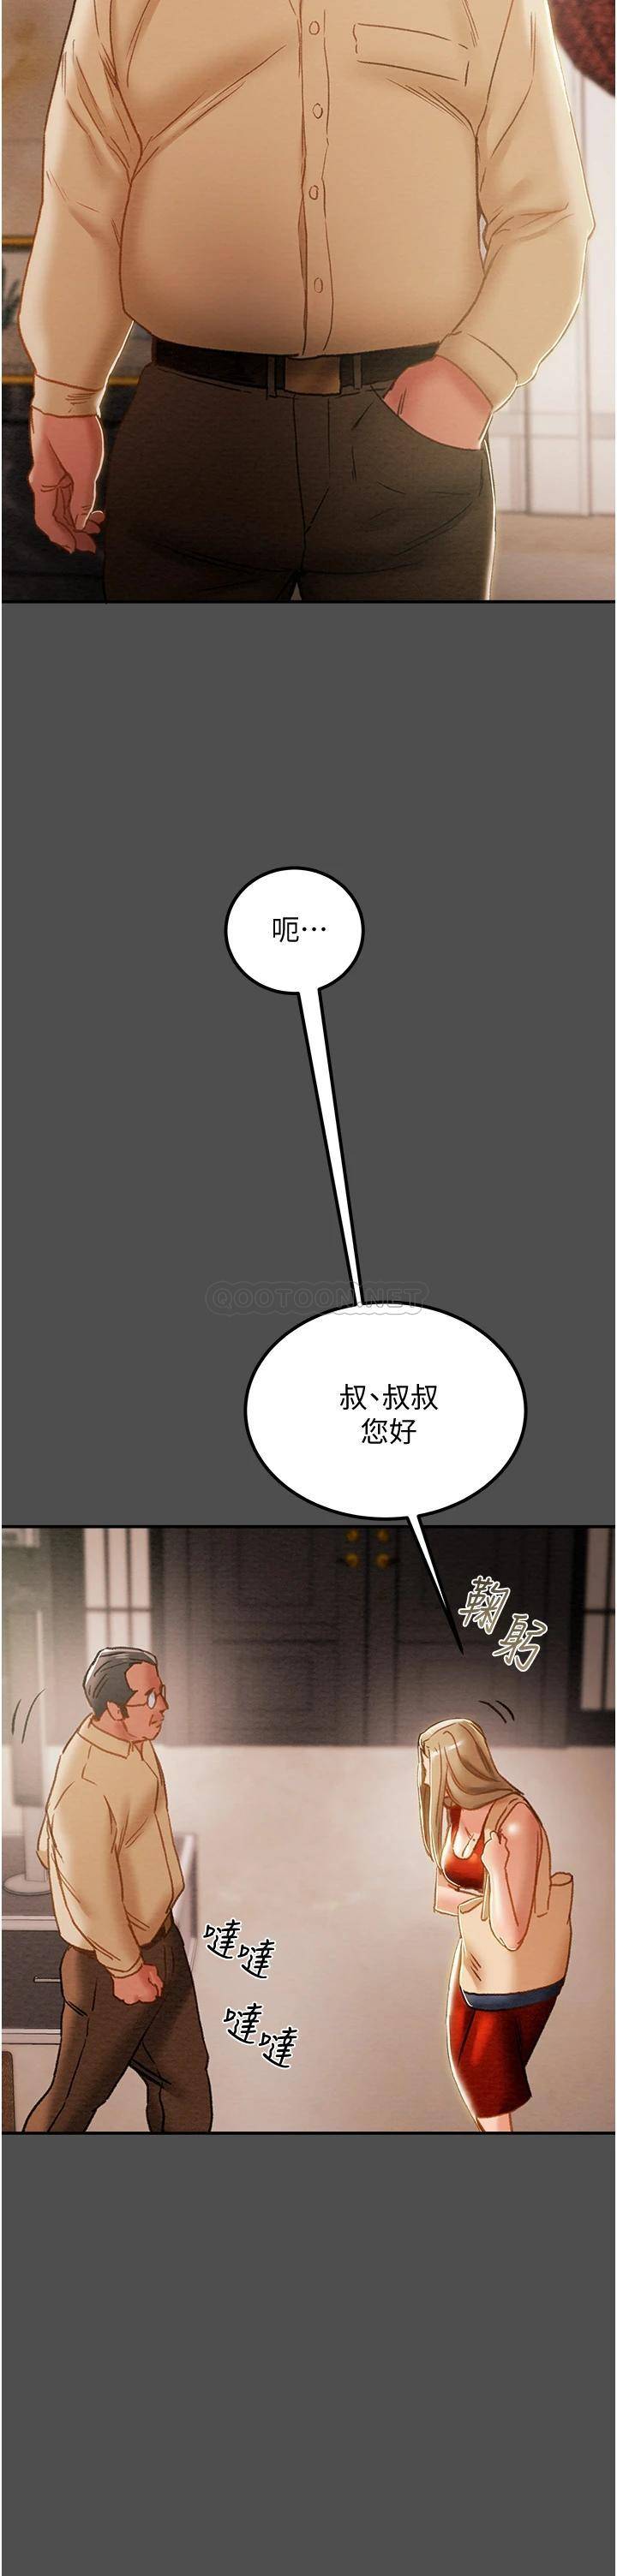 韩国污漫画 純情女攻略計劃 第62话顶级掠食者的狩猎方法 30